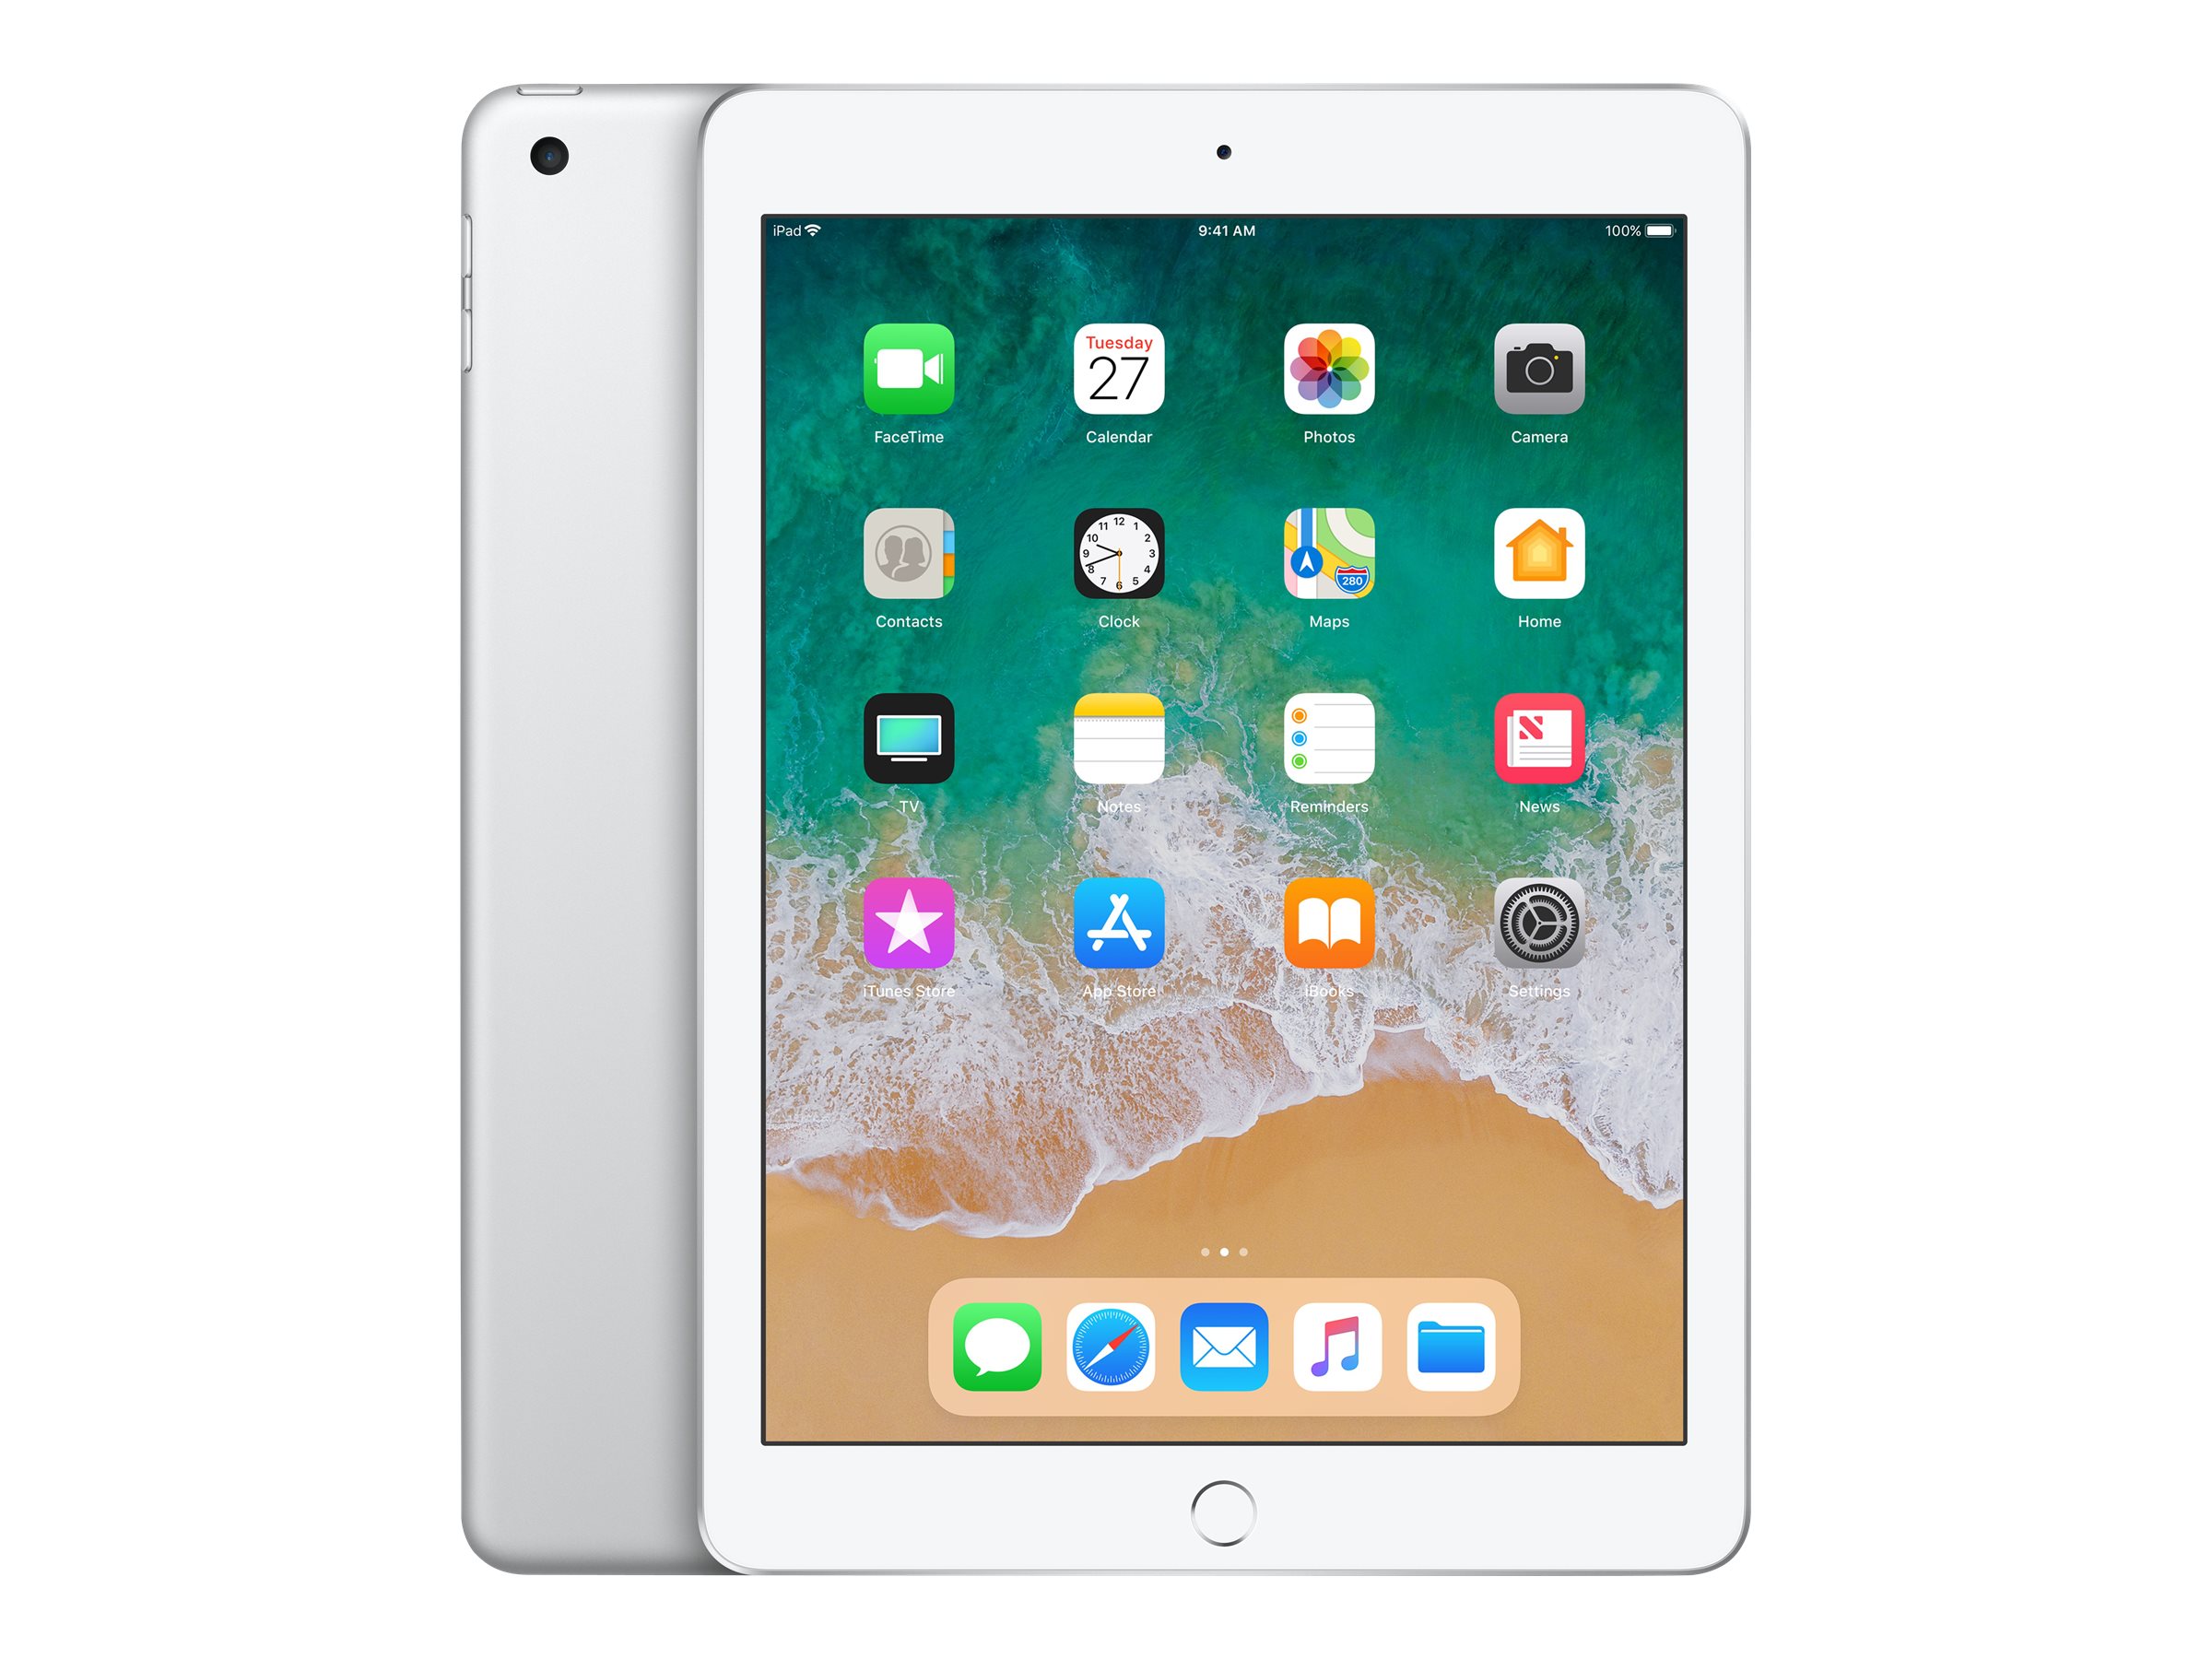 Apple 9.7-inch iPad Wi-Fi